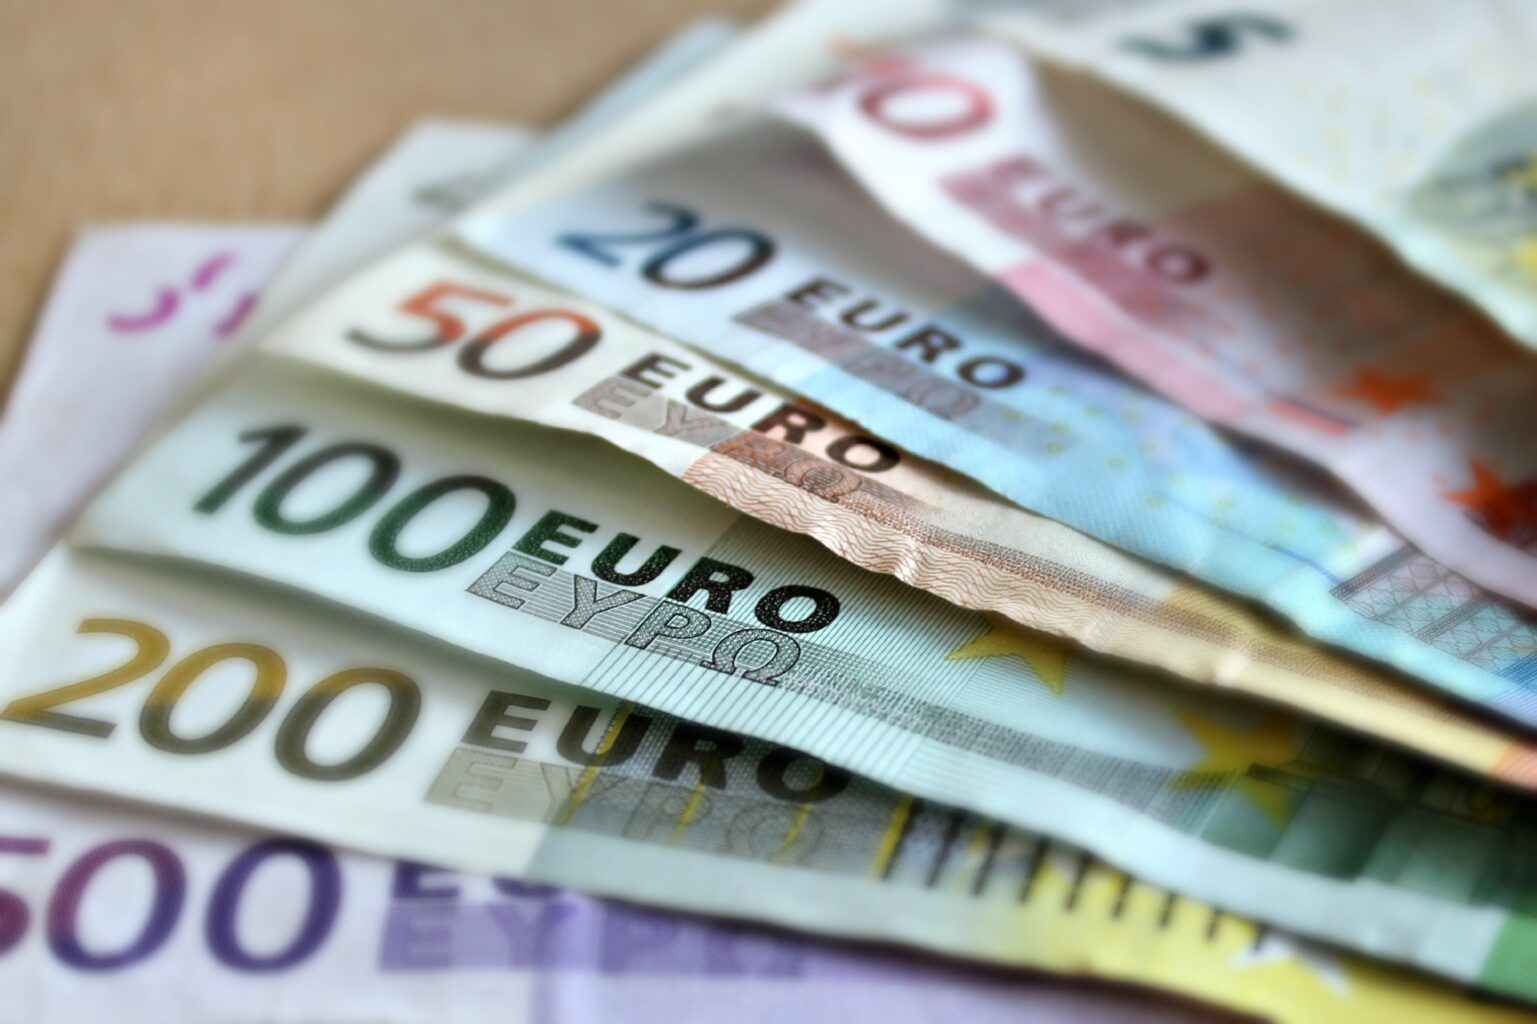  Euro Stoxx 50 Conhe a O Principal ndice De A es Da Zona Do Euro